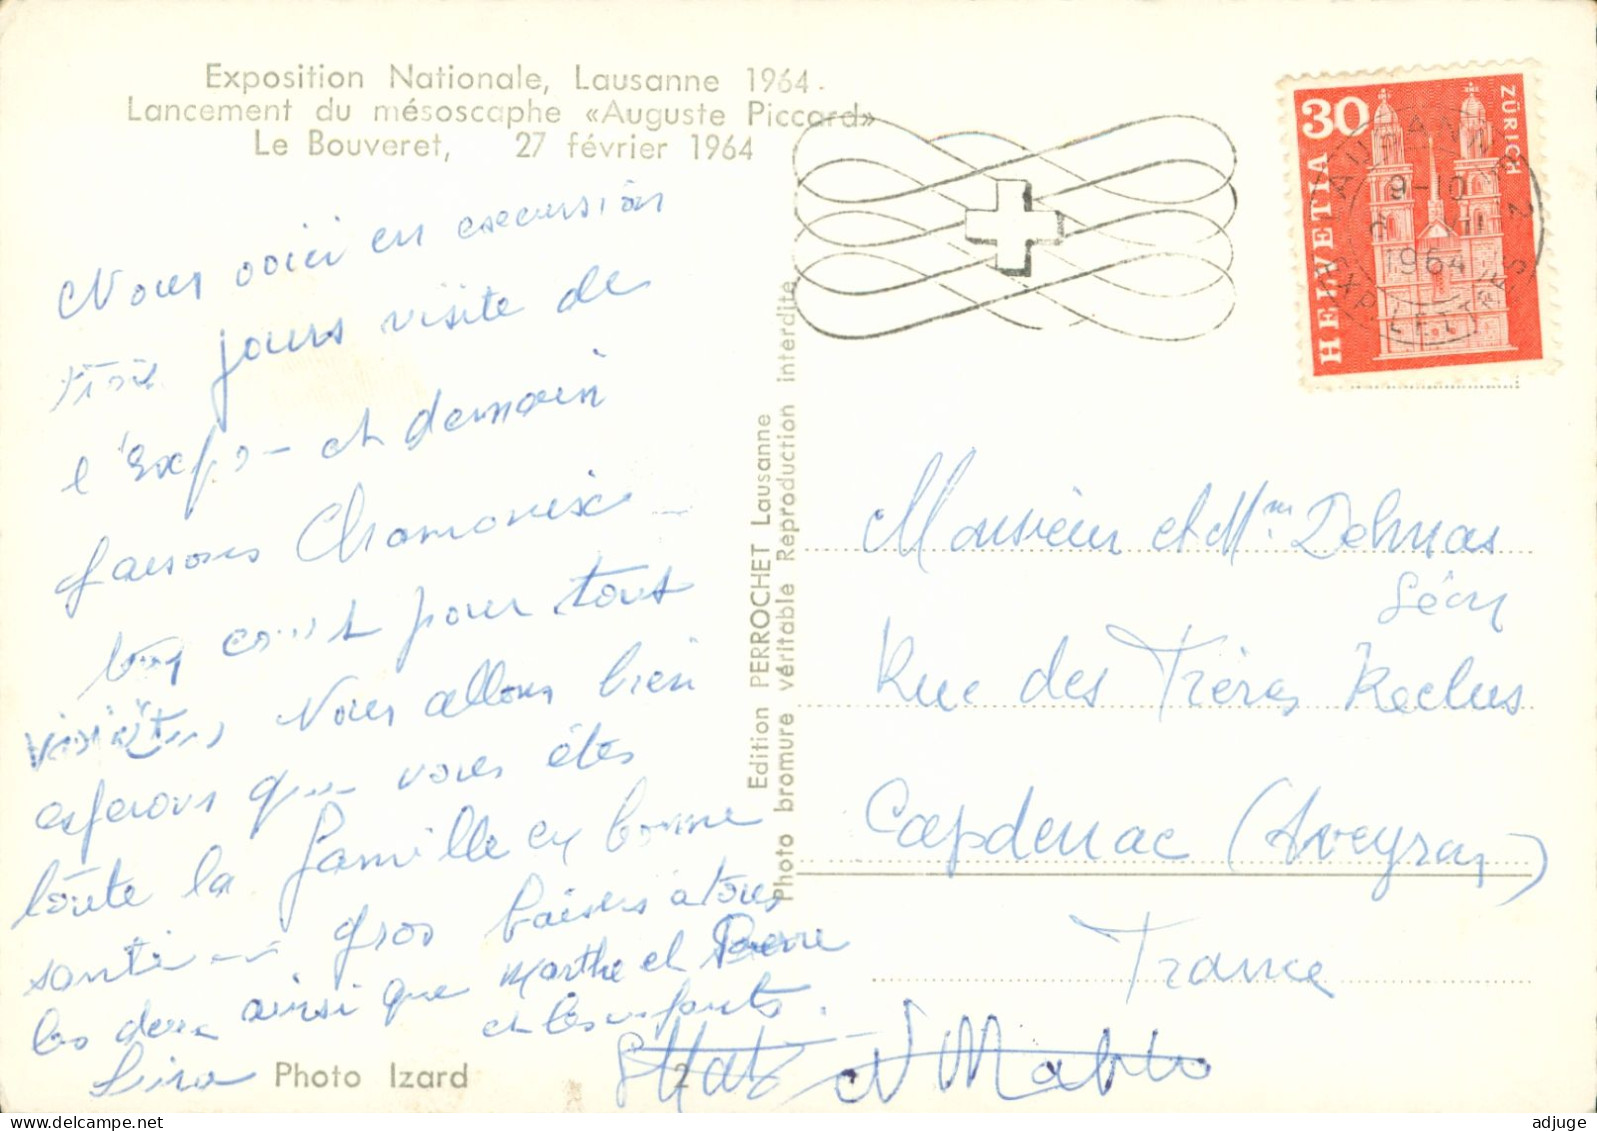 CPSM-Lancement du mésoscaphe"Auguste PICCARD" LE BOUVERET le 27 février 1964* Expo Nationale Lausanne